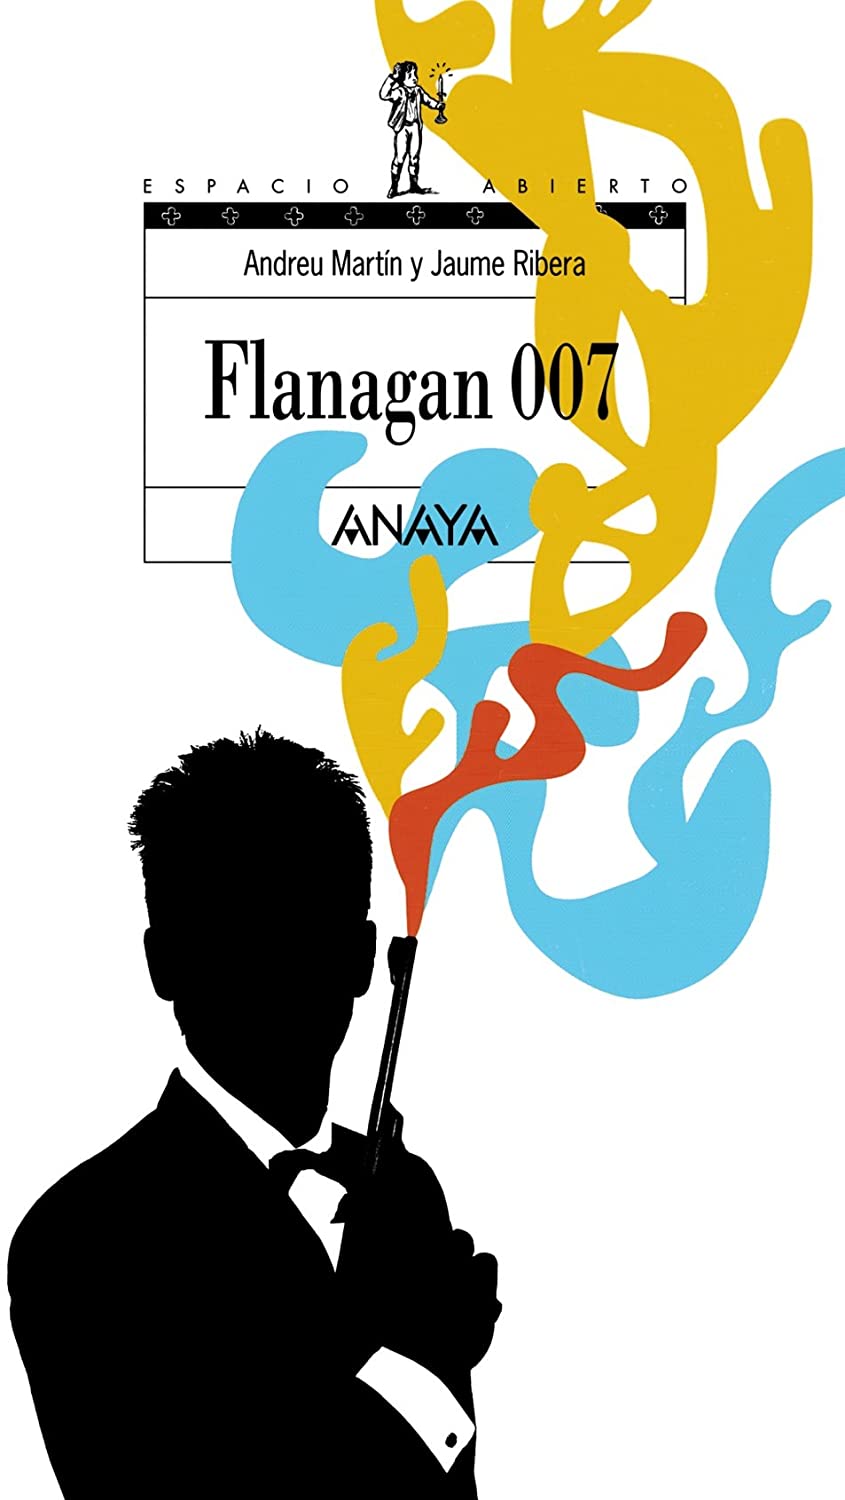 Flanagan 007: Serie Flanagan, 6 (LITERATURA JUVENIL - Espacio Abierto) (Spanish Edition)